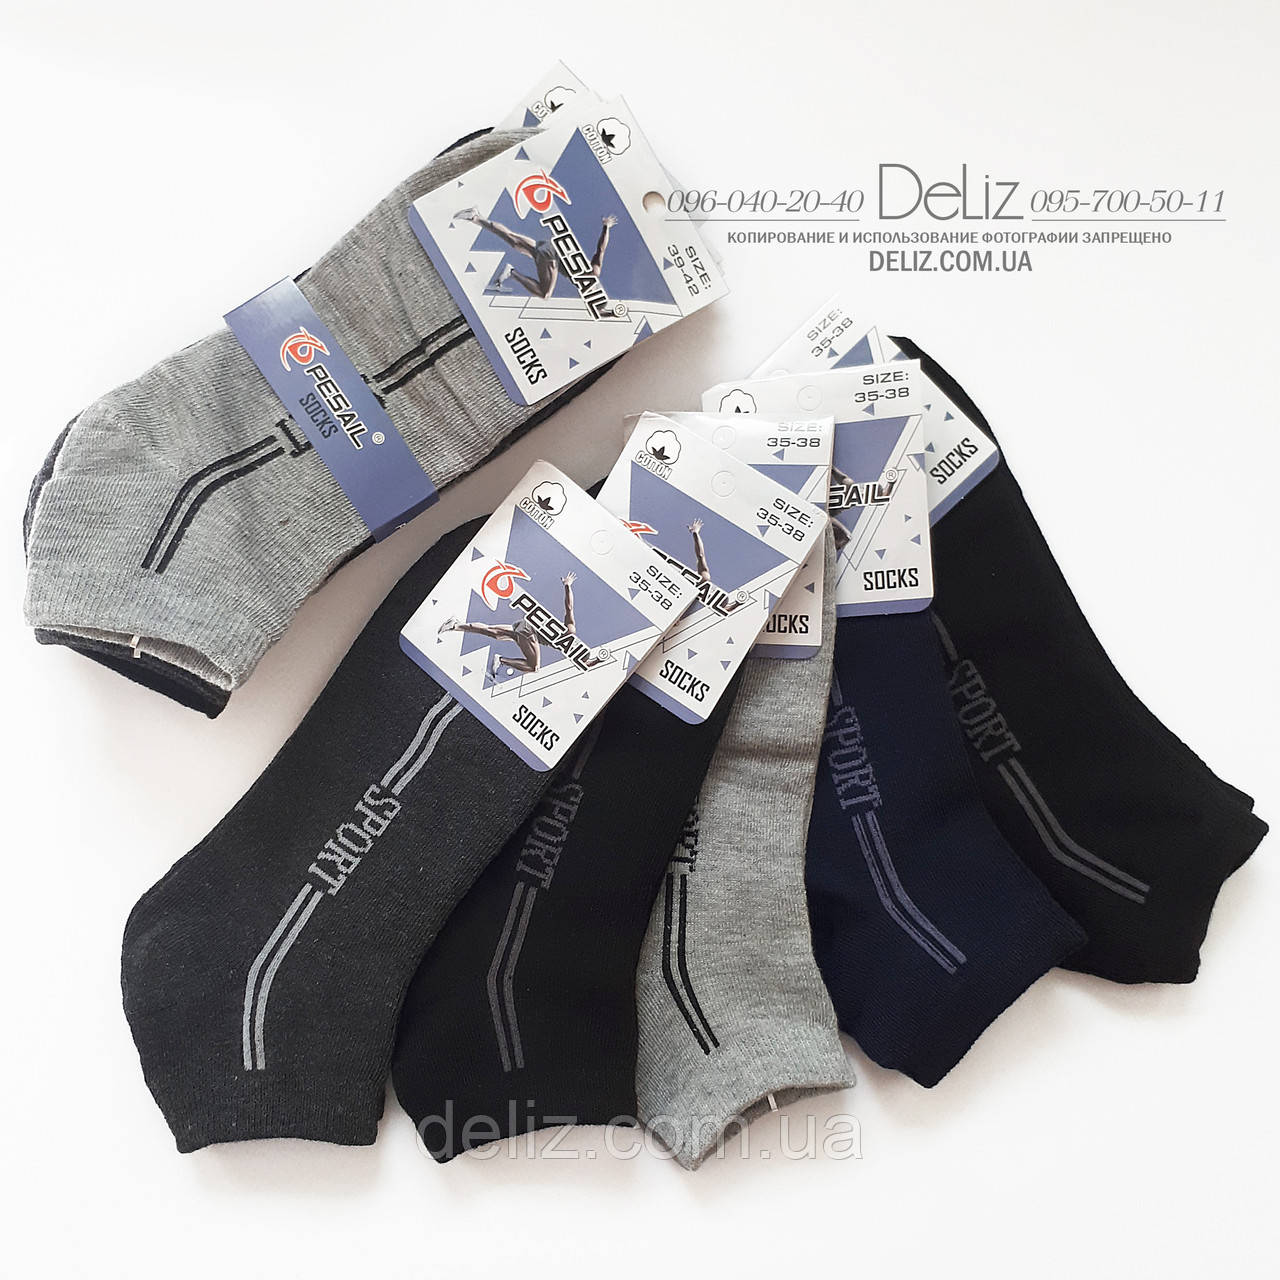 Укорочені ТЕМНО-СІРНІ чоловічі підліткові шкарпетки Pesail 6014-1 "спорт", чудова х/б якість. Розмір 35-38